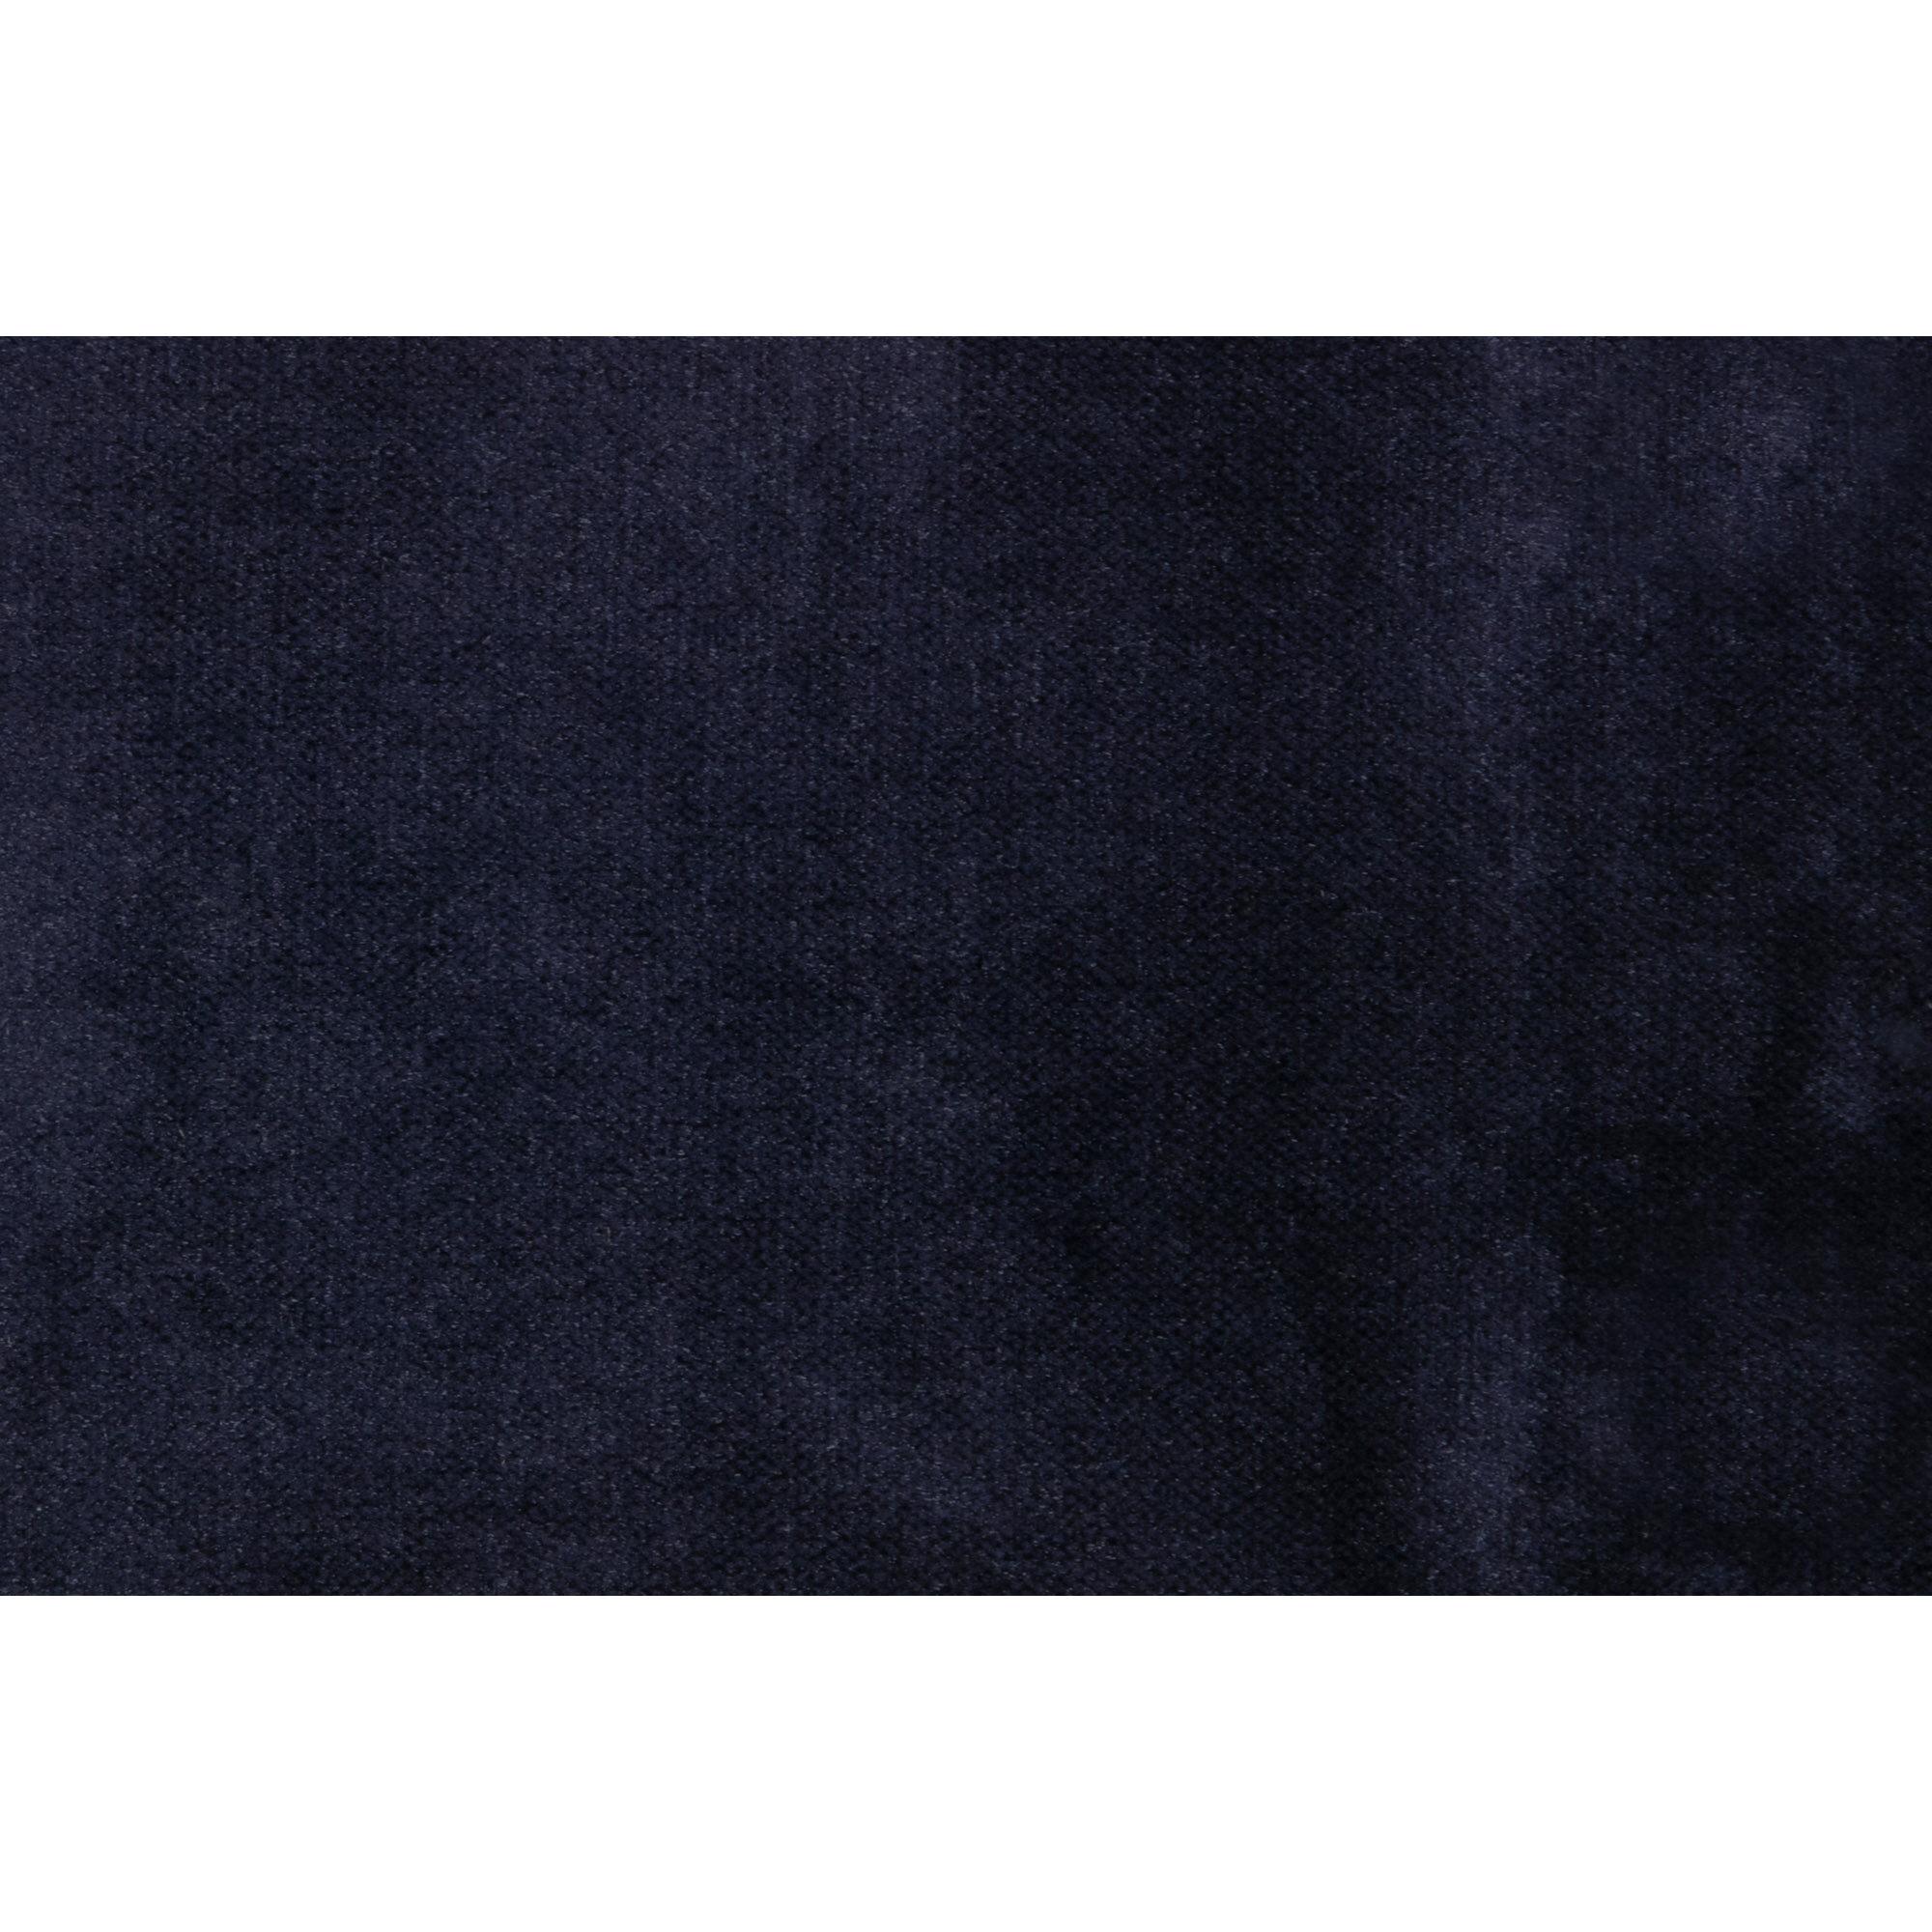  Rodeo Chaiselong Venstrevendt Velour - Dark Blue fra BePureHome i Velour (Varenr: 800905-178)